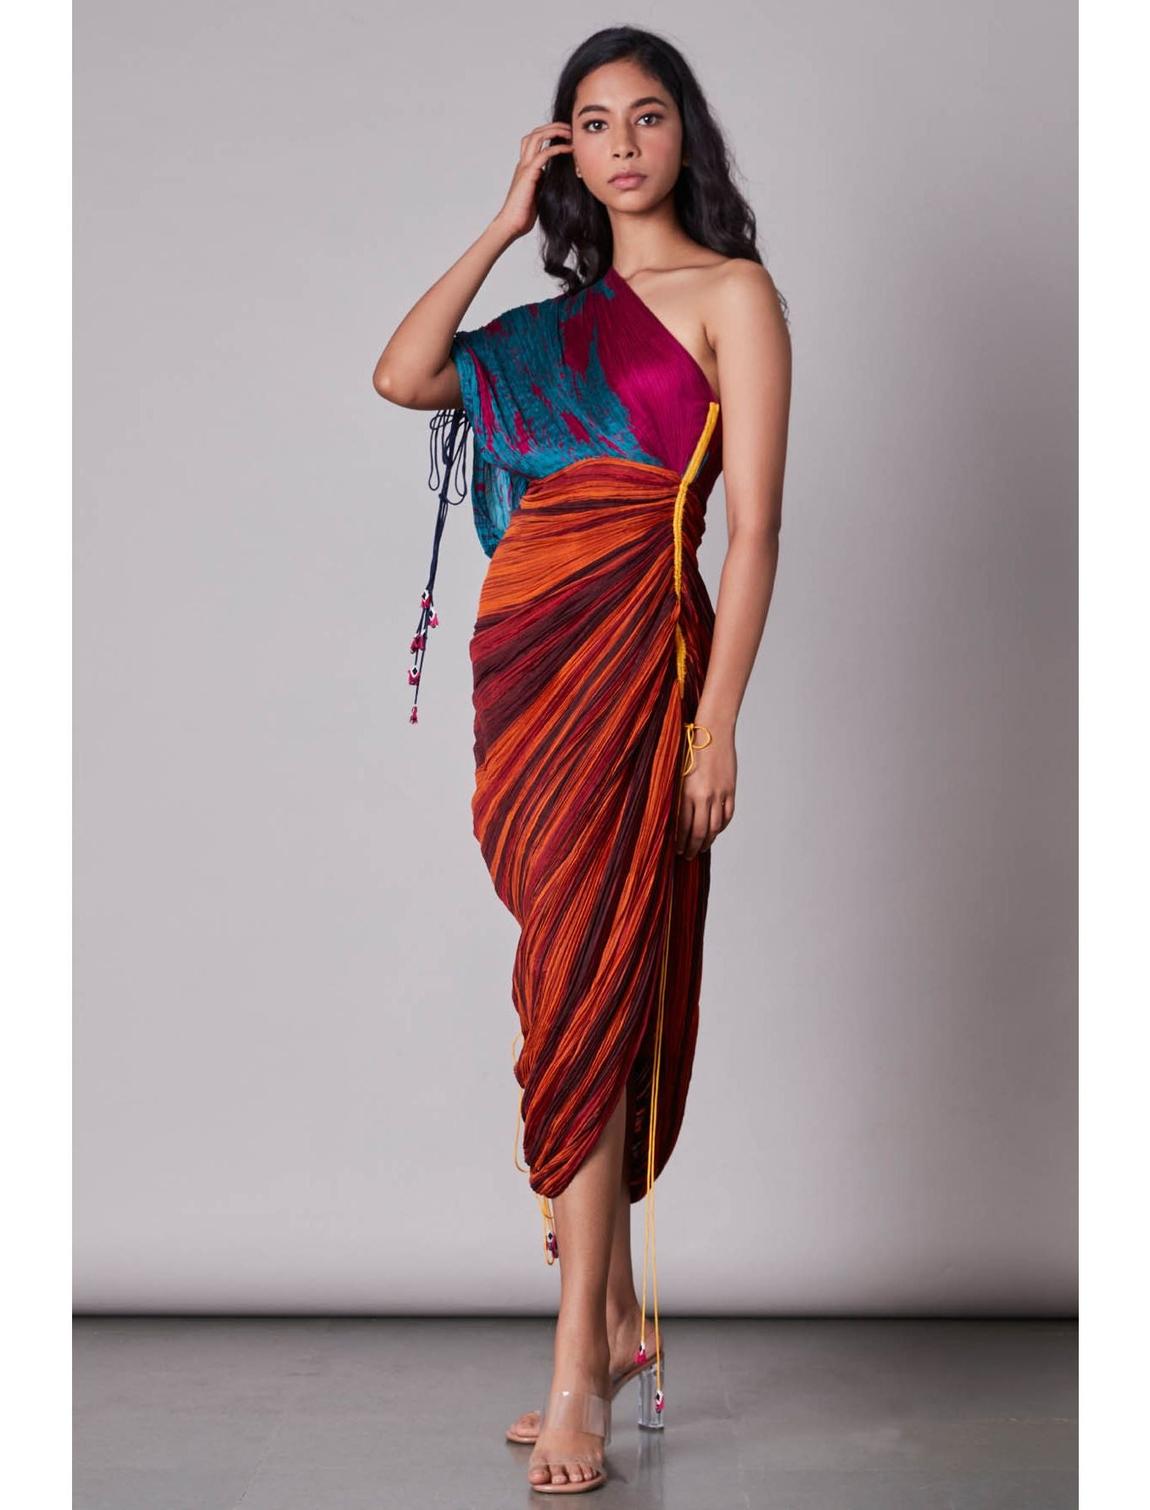 Saaksha & Kinni Size 8 Multicolor Side Slit Dress on Queenly